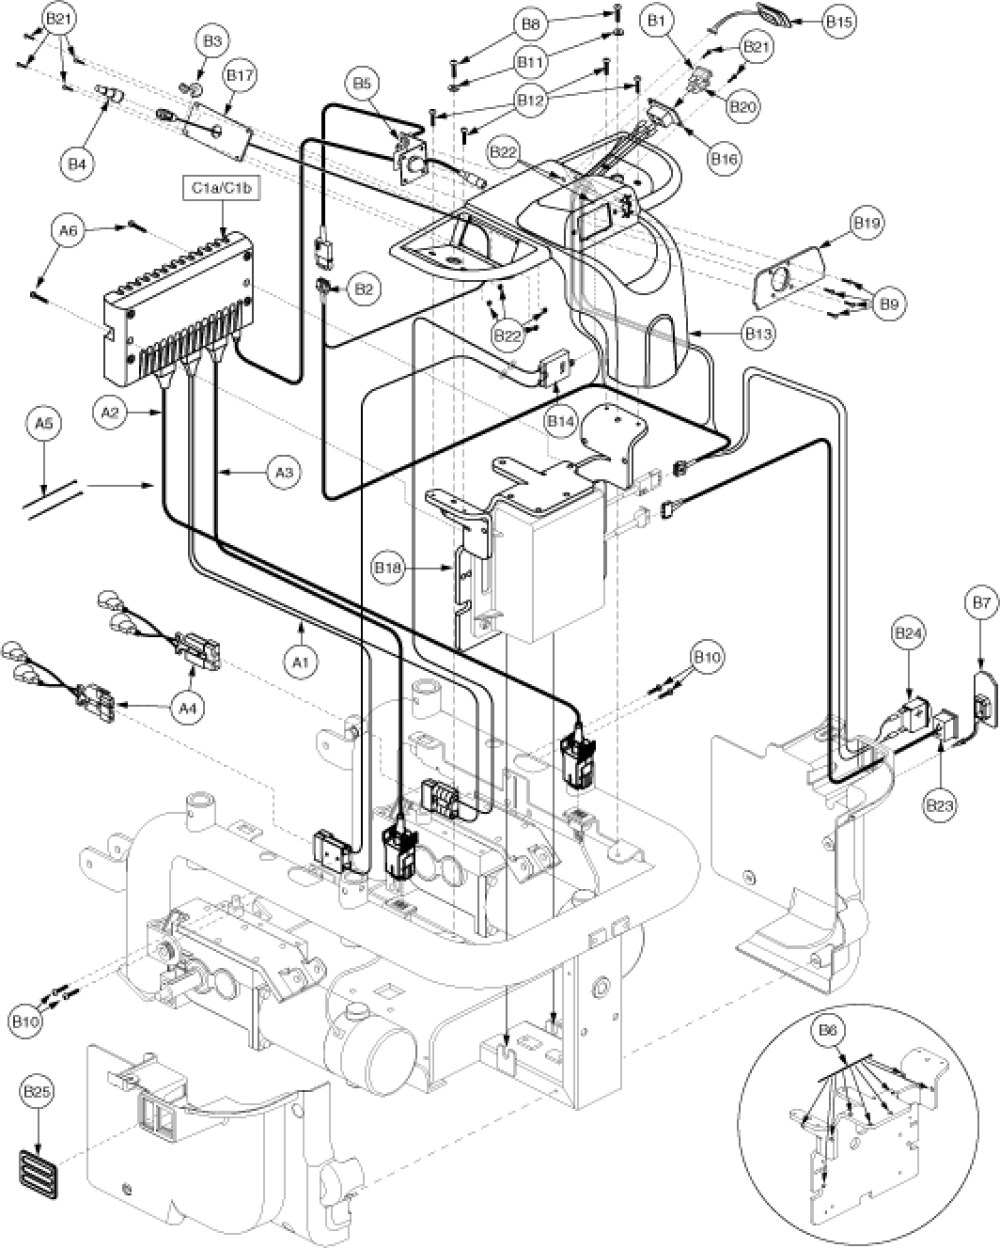 Remote Plus Tray, Quantum, Eleasmb4412 parts diagram